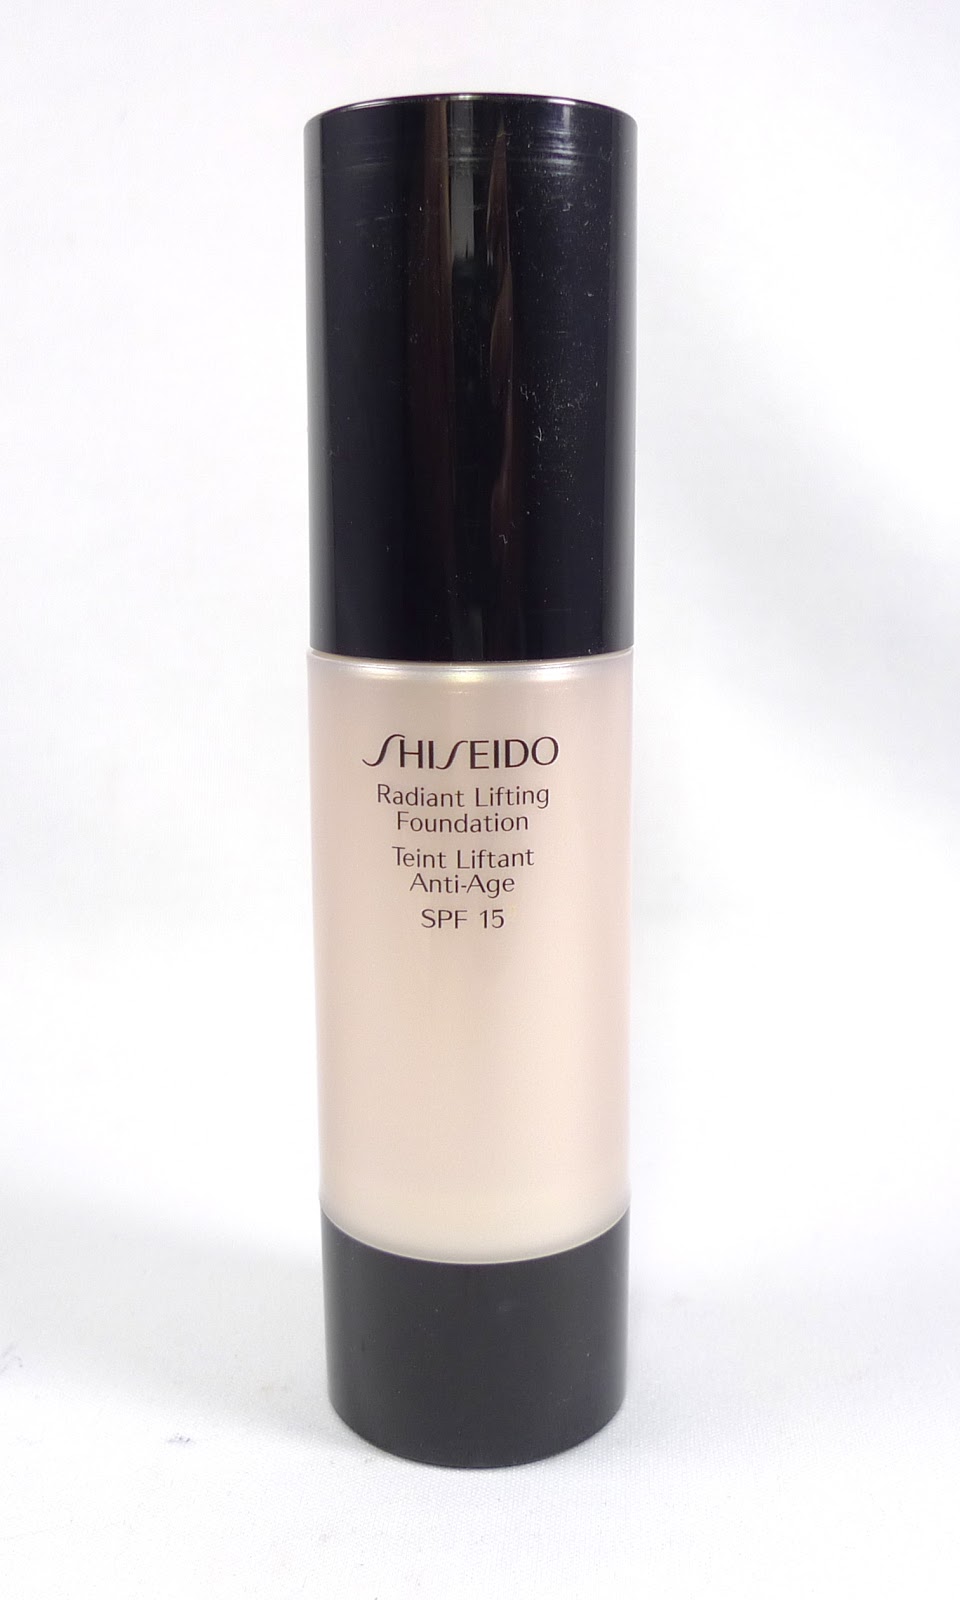 Shiseido synchro skin radiant lifting. Шисейдо Radiant Lifting Foundation. Shiseido тональный крем Radiant Lifting Foundation, SPF 15. Шисейдо синхро скин тональный Радиант. Тональный крем Shiseido Radiant Lifting Foundation Teint liftant Anti-age SPF 20.